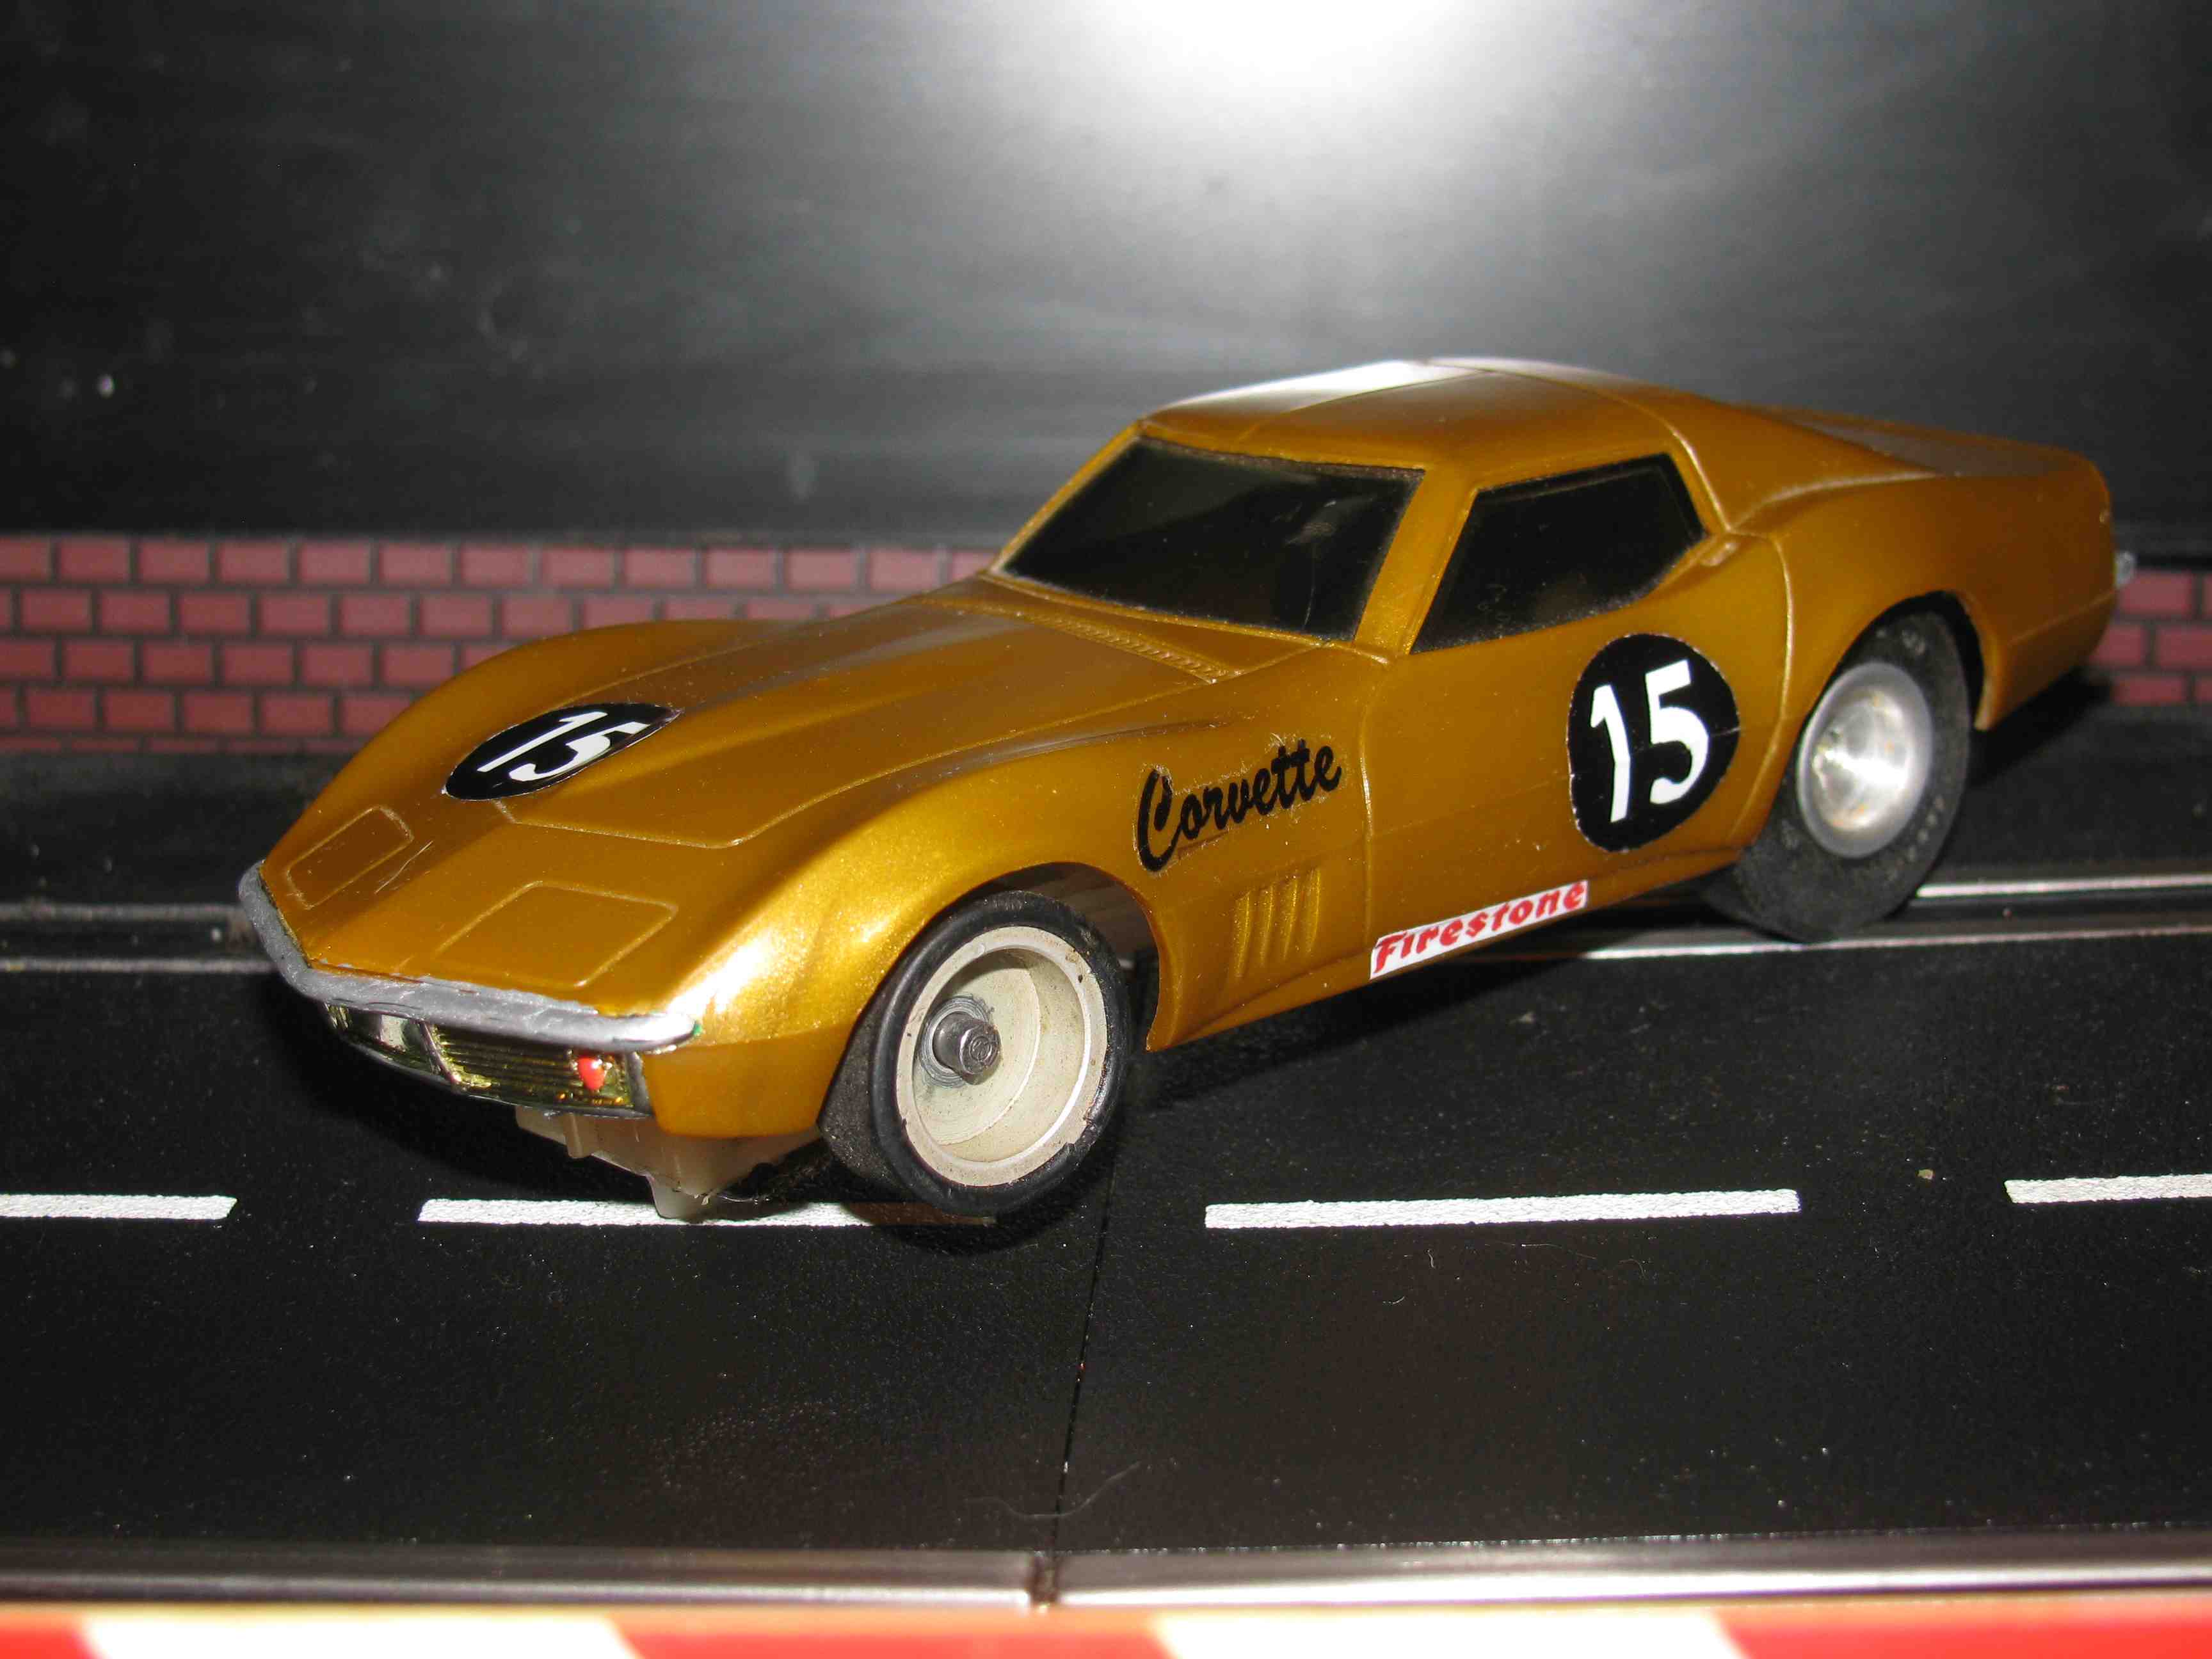 * SOLD * Vintage Eldon Corvette Slot Car 1/32 Scale – Gold Car #15